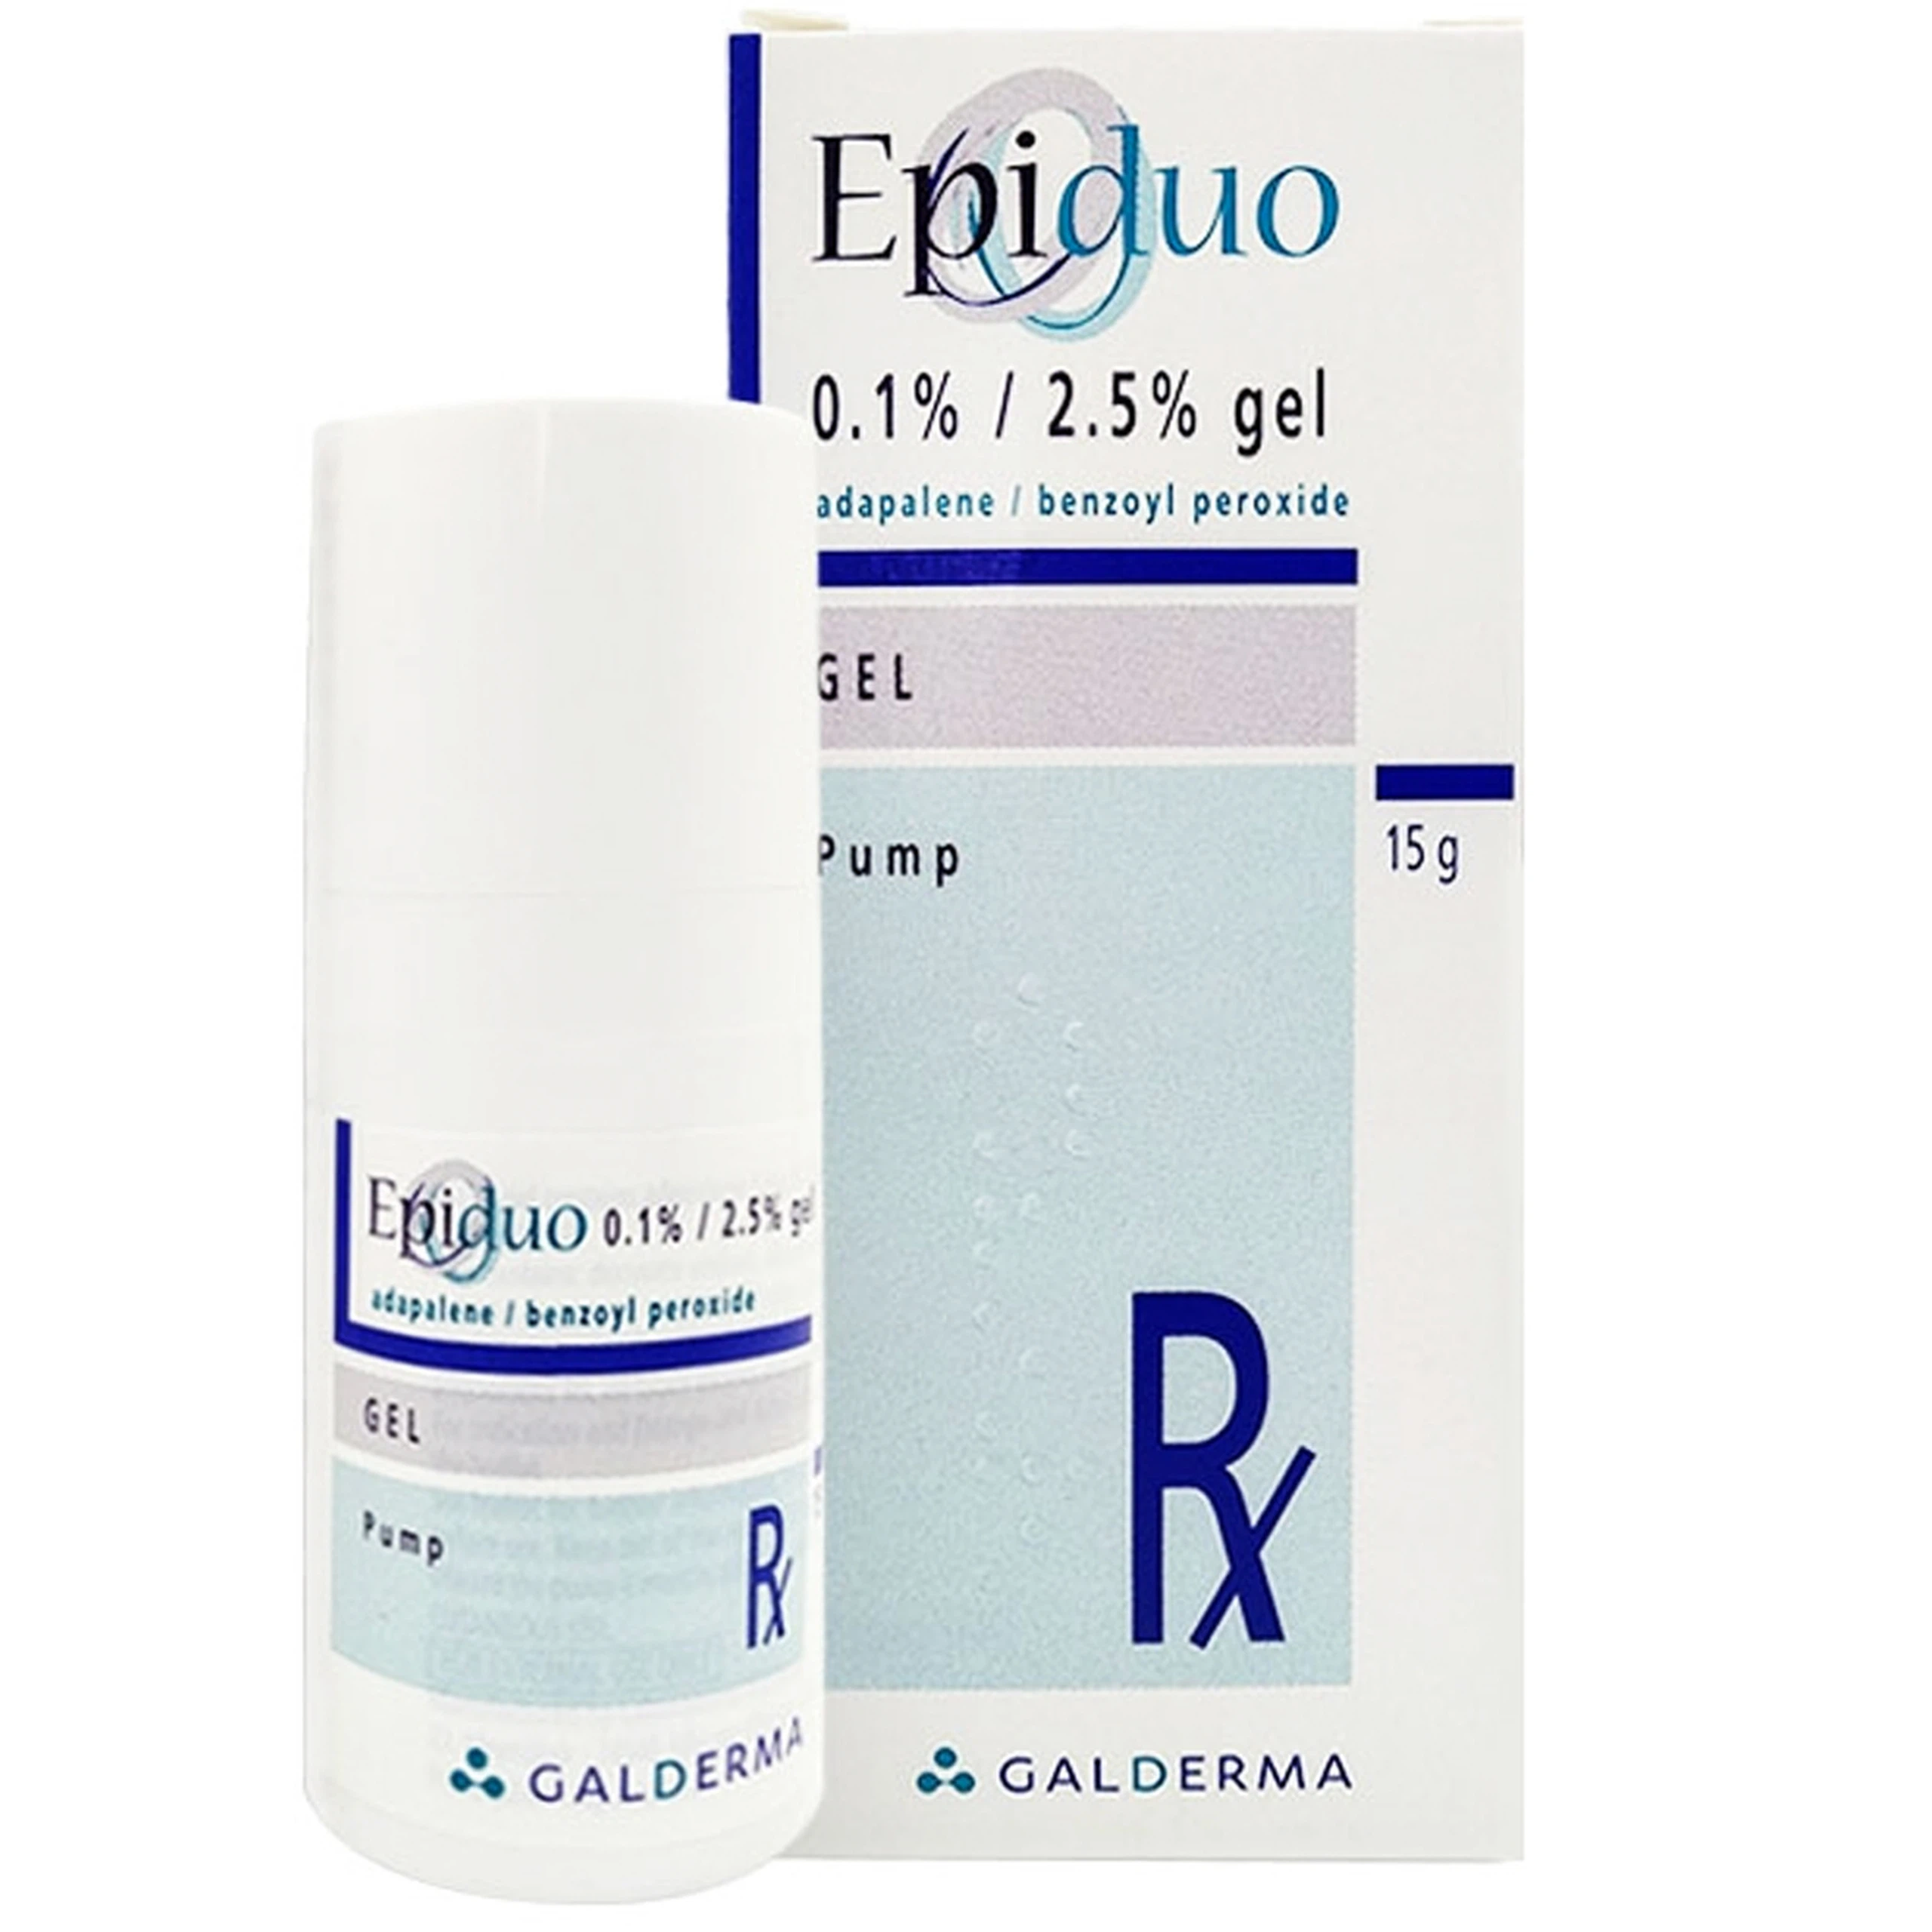 Gel Epiduo 0.1%/2.5% Galderma điều trị mụn trứng cá (15g)